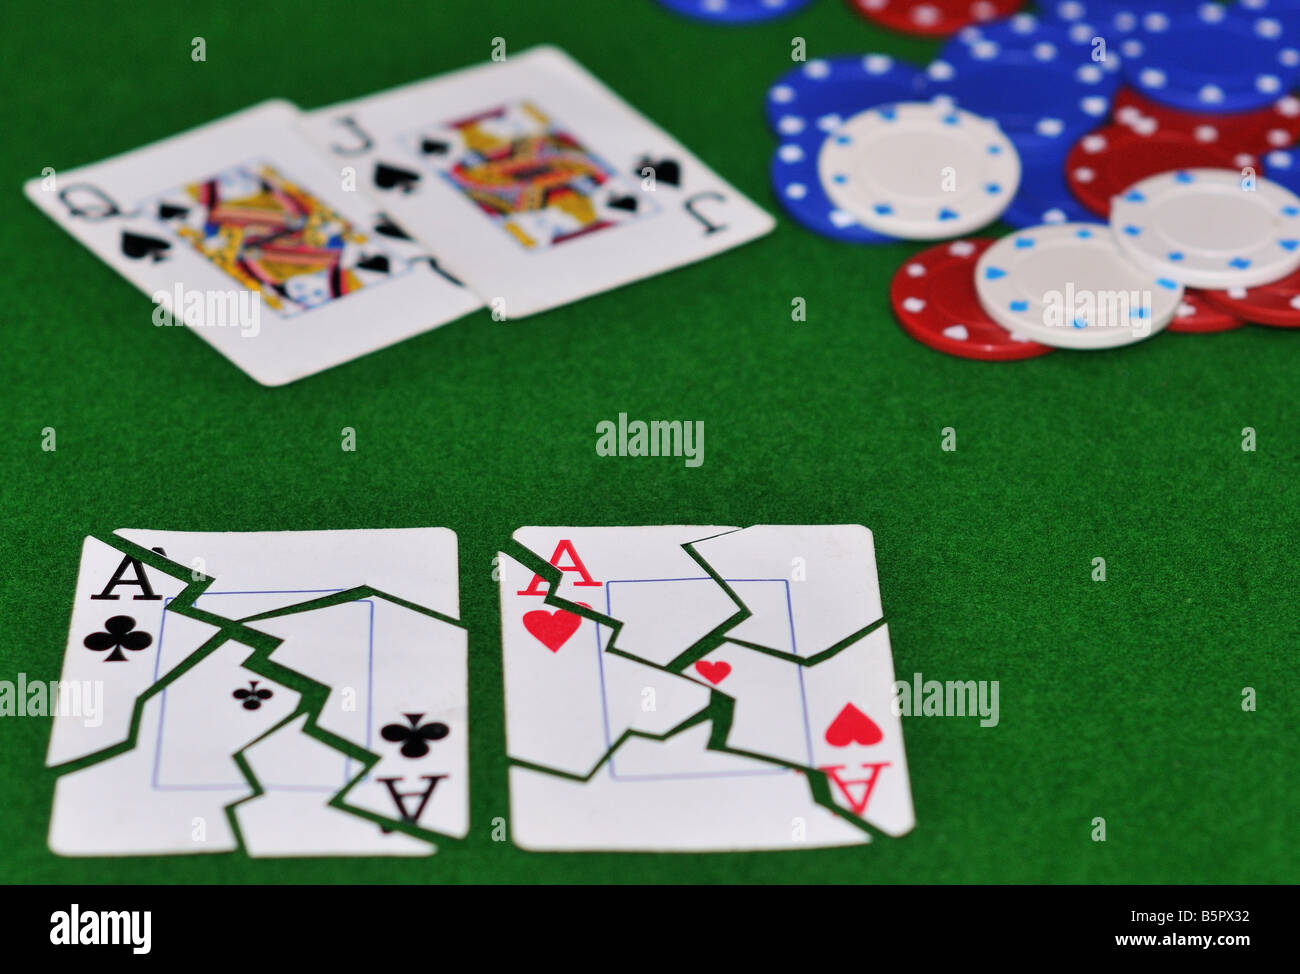 Une parfaite illustration de ce que c'est d'avoir votre aces fissuré dans le cruel jeu de poker (pas de limite, limite, hold'em) Banque D'Images